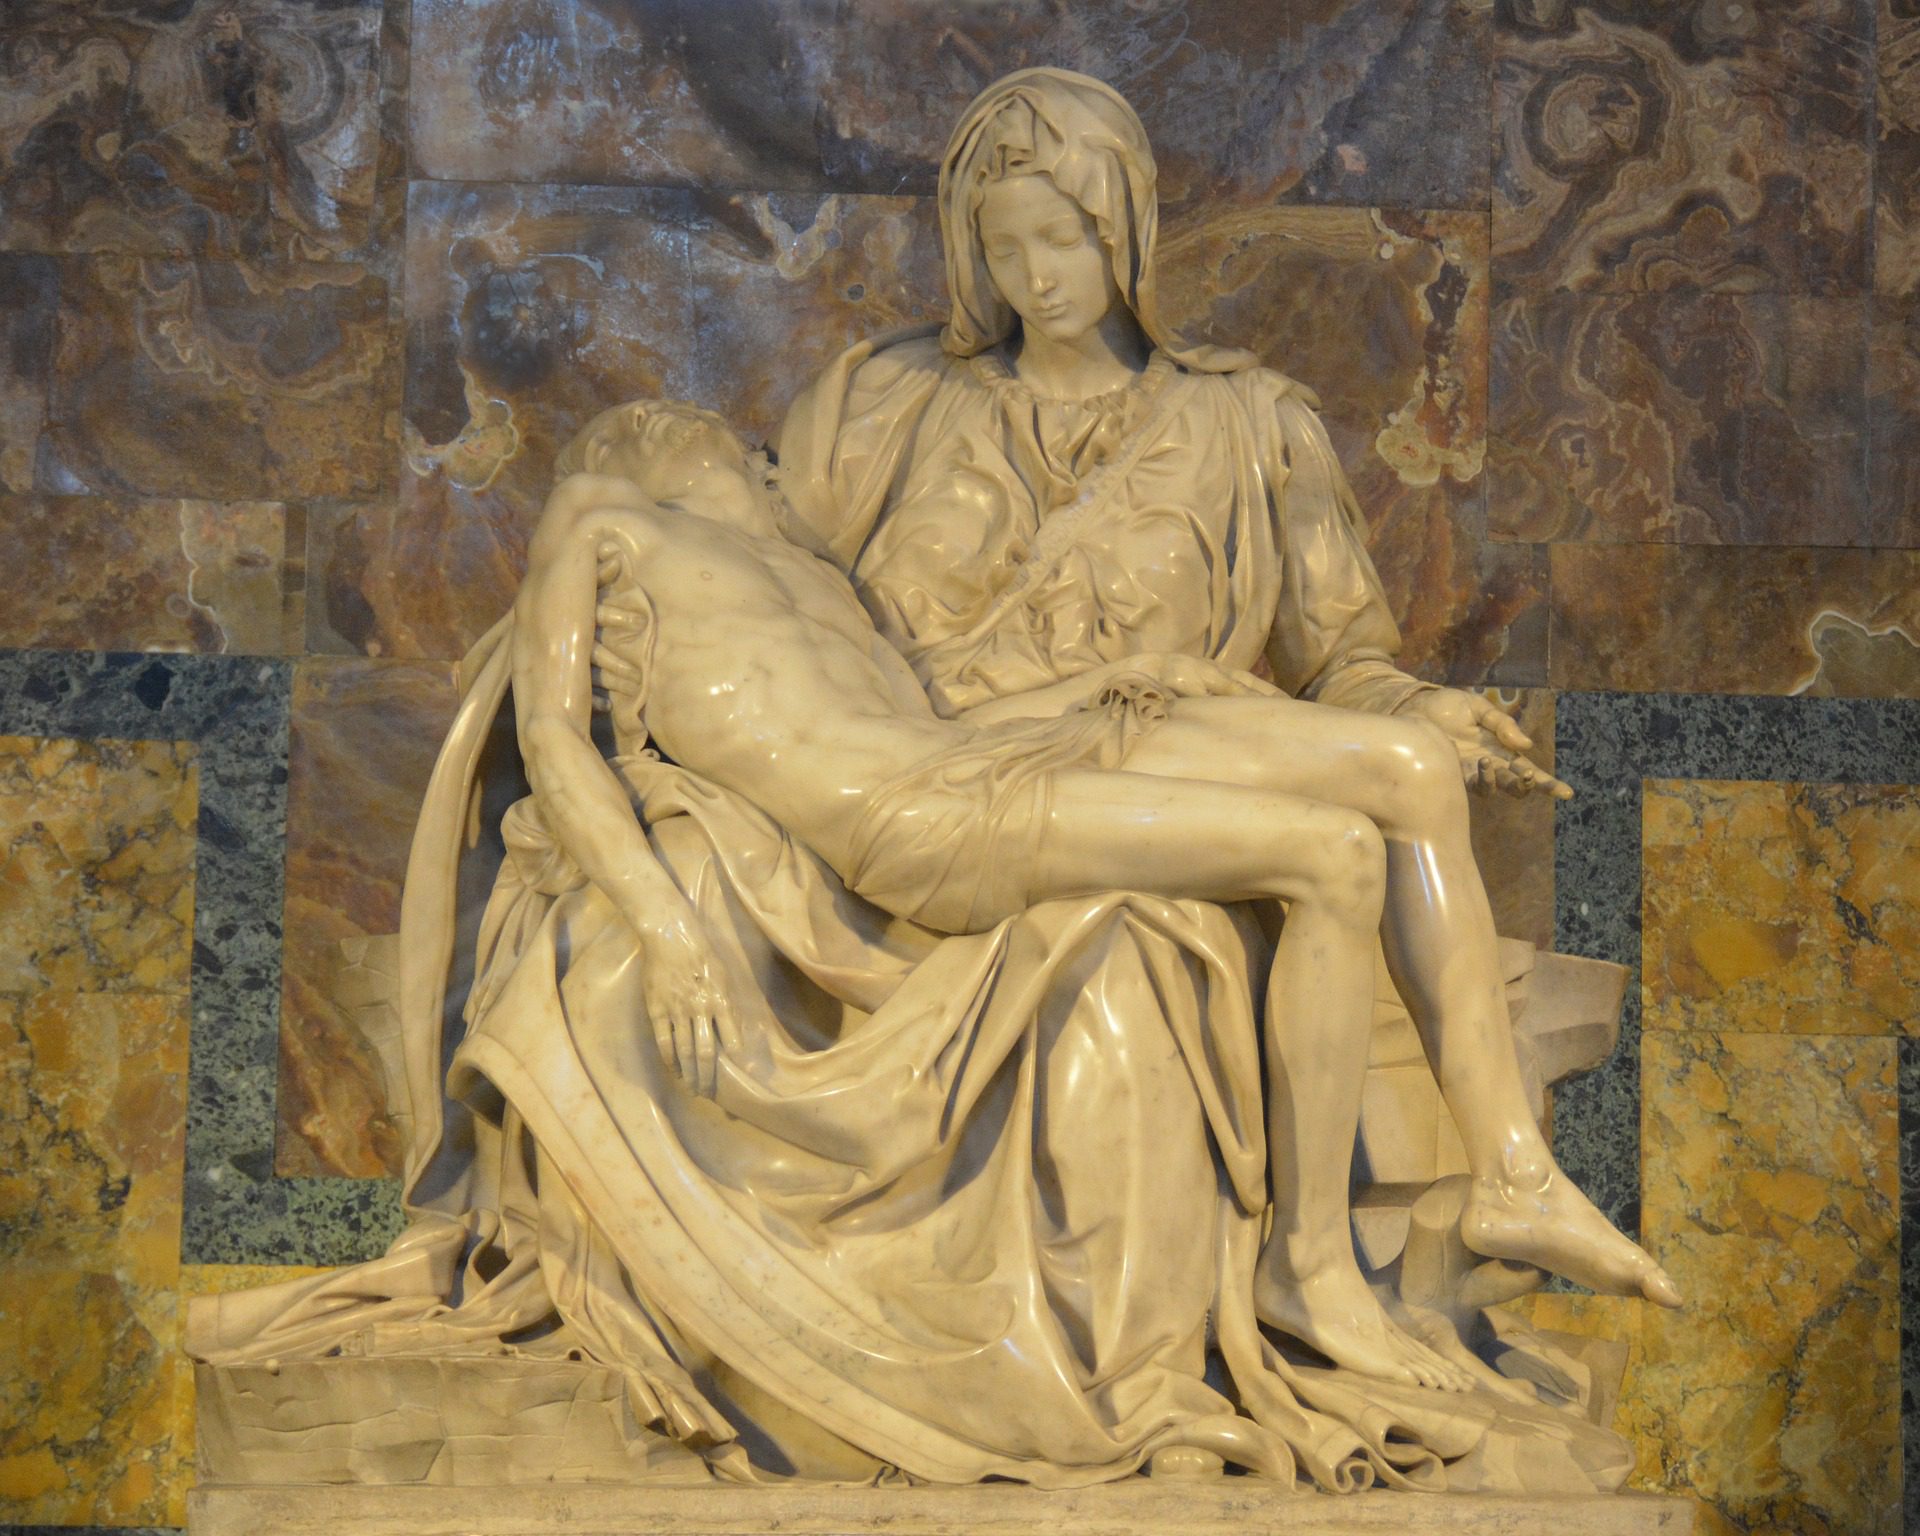 Michangelo's Pieta, St. Peter's Basilica, Rome